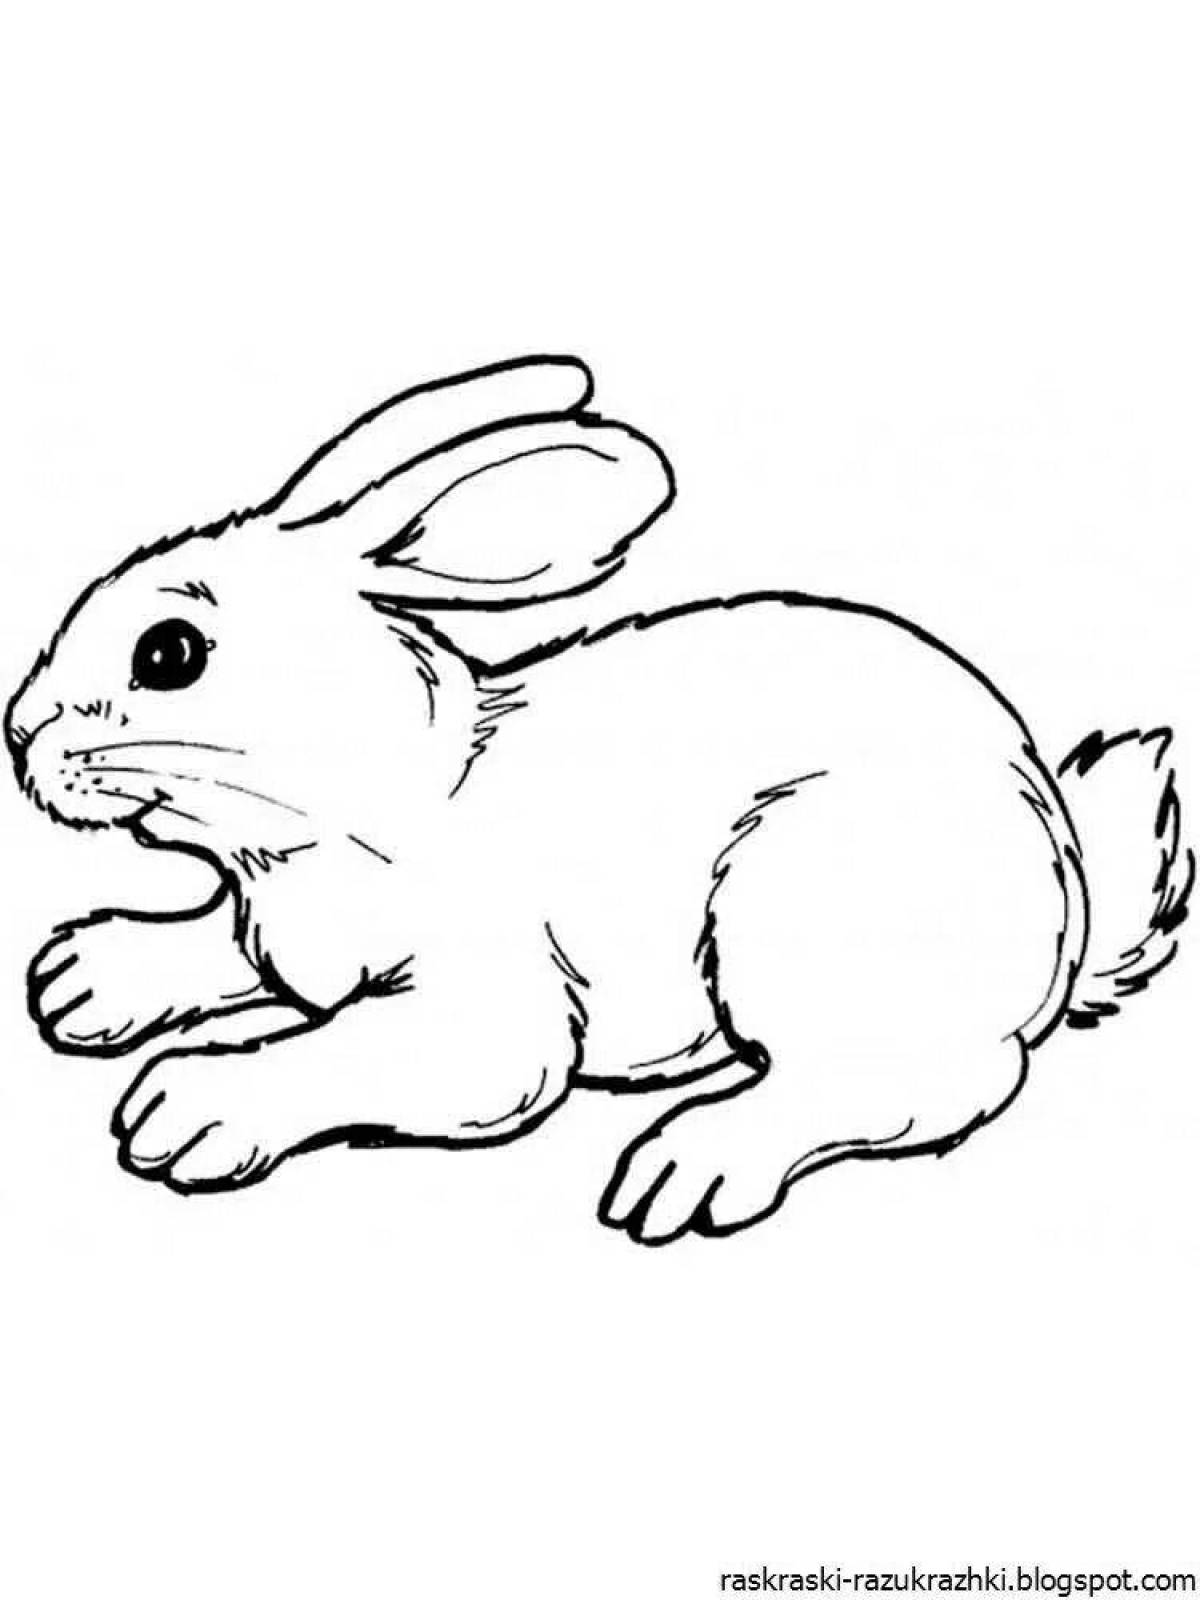 Увлекательная раскраска кролика для детей